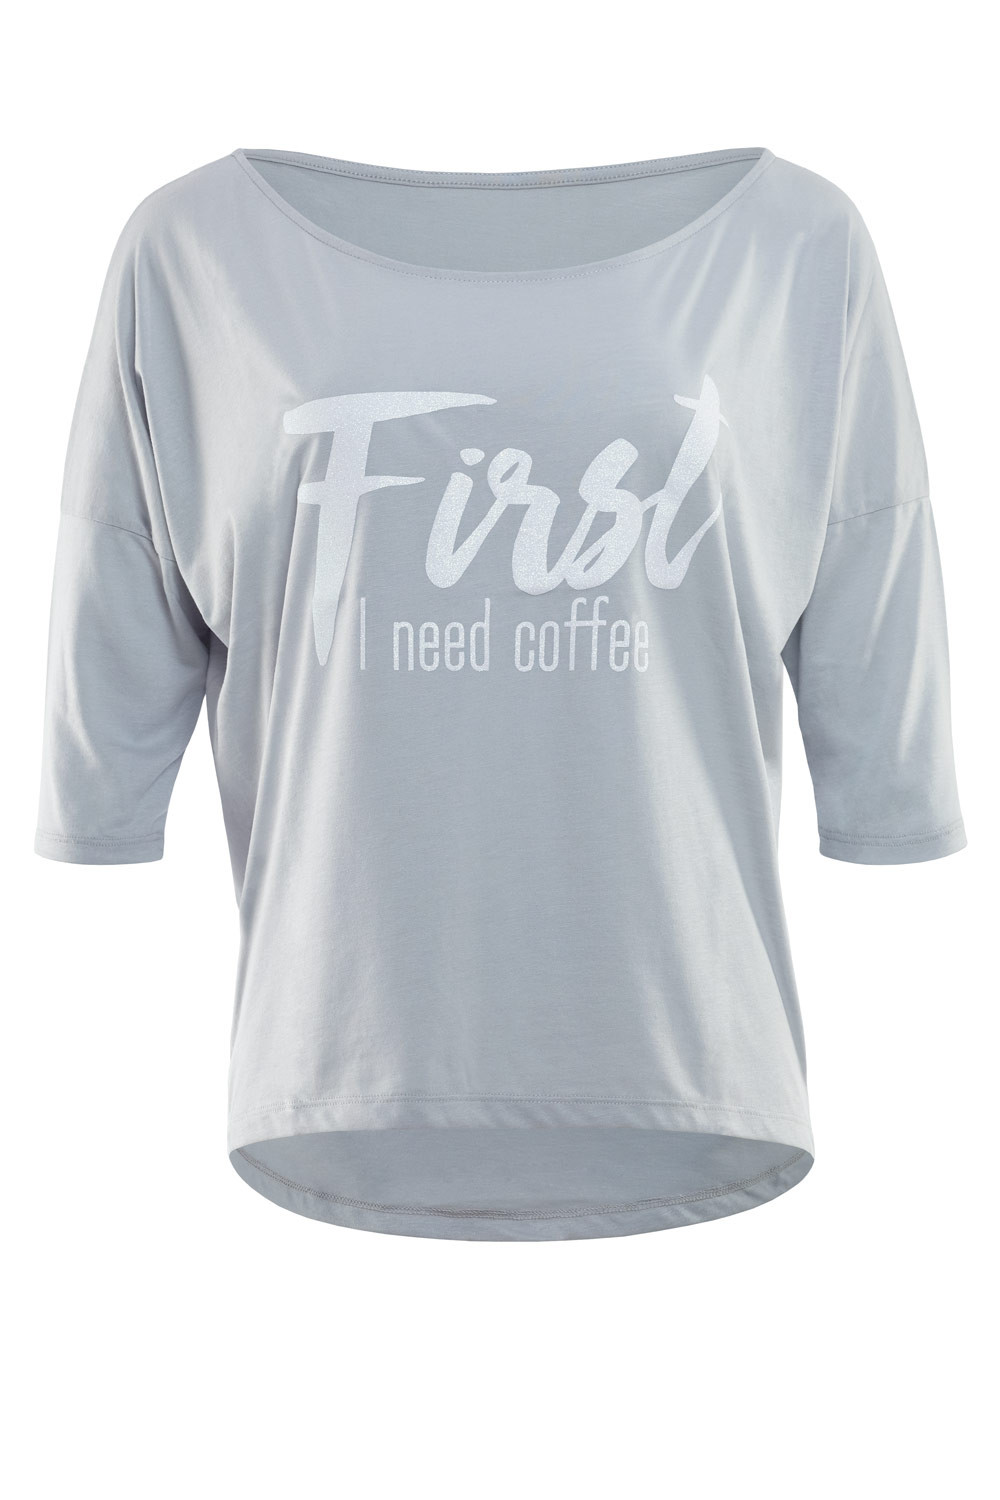 Ultra leichtes Modal-3/4-Arm Shirt MCS001 mit weißem Glitzer-Aufdruck  „First I need coffee”, Winshape Dance Style